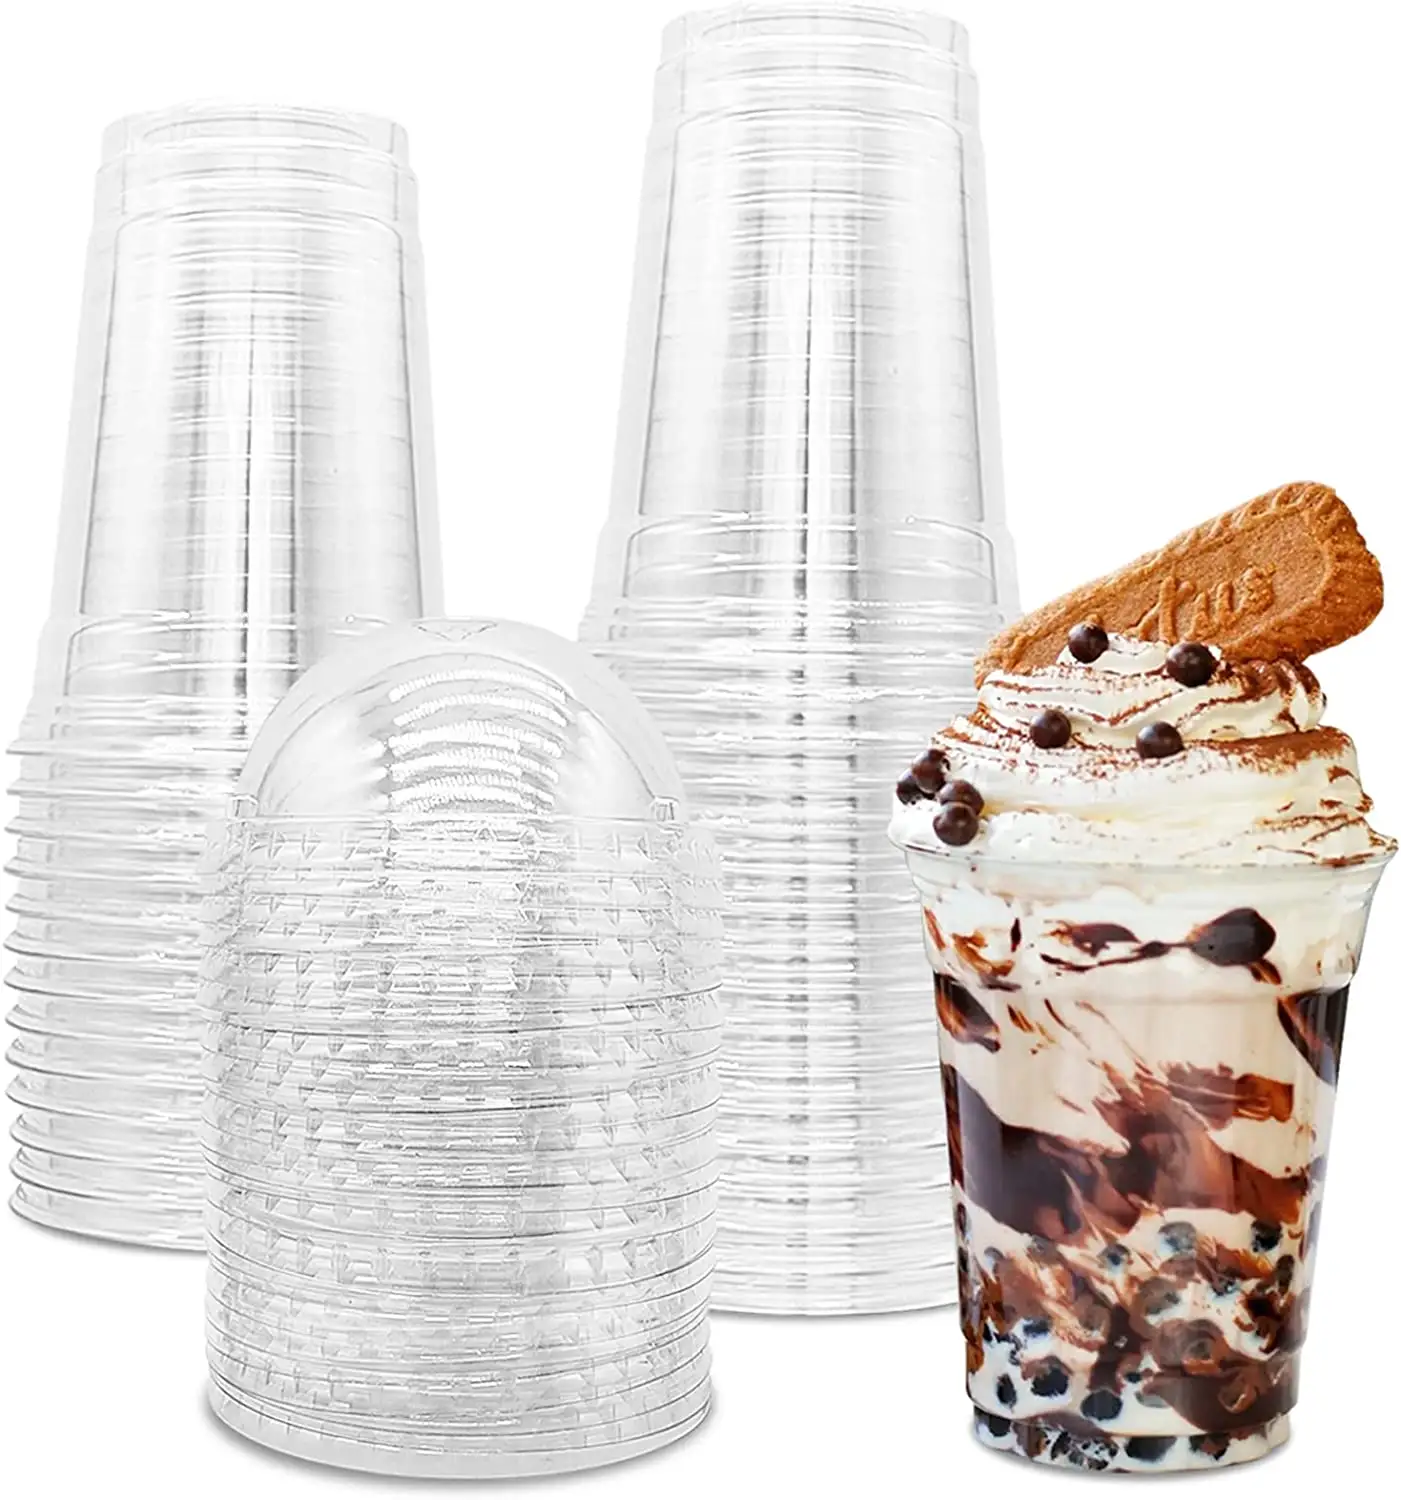 使い捨てデザートカップ硬質プラスチックカップカスタム工場価格ジュースミルクケーキ12オンス16オンスプラスチックカップドーム蓋付き